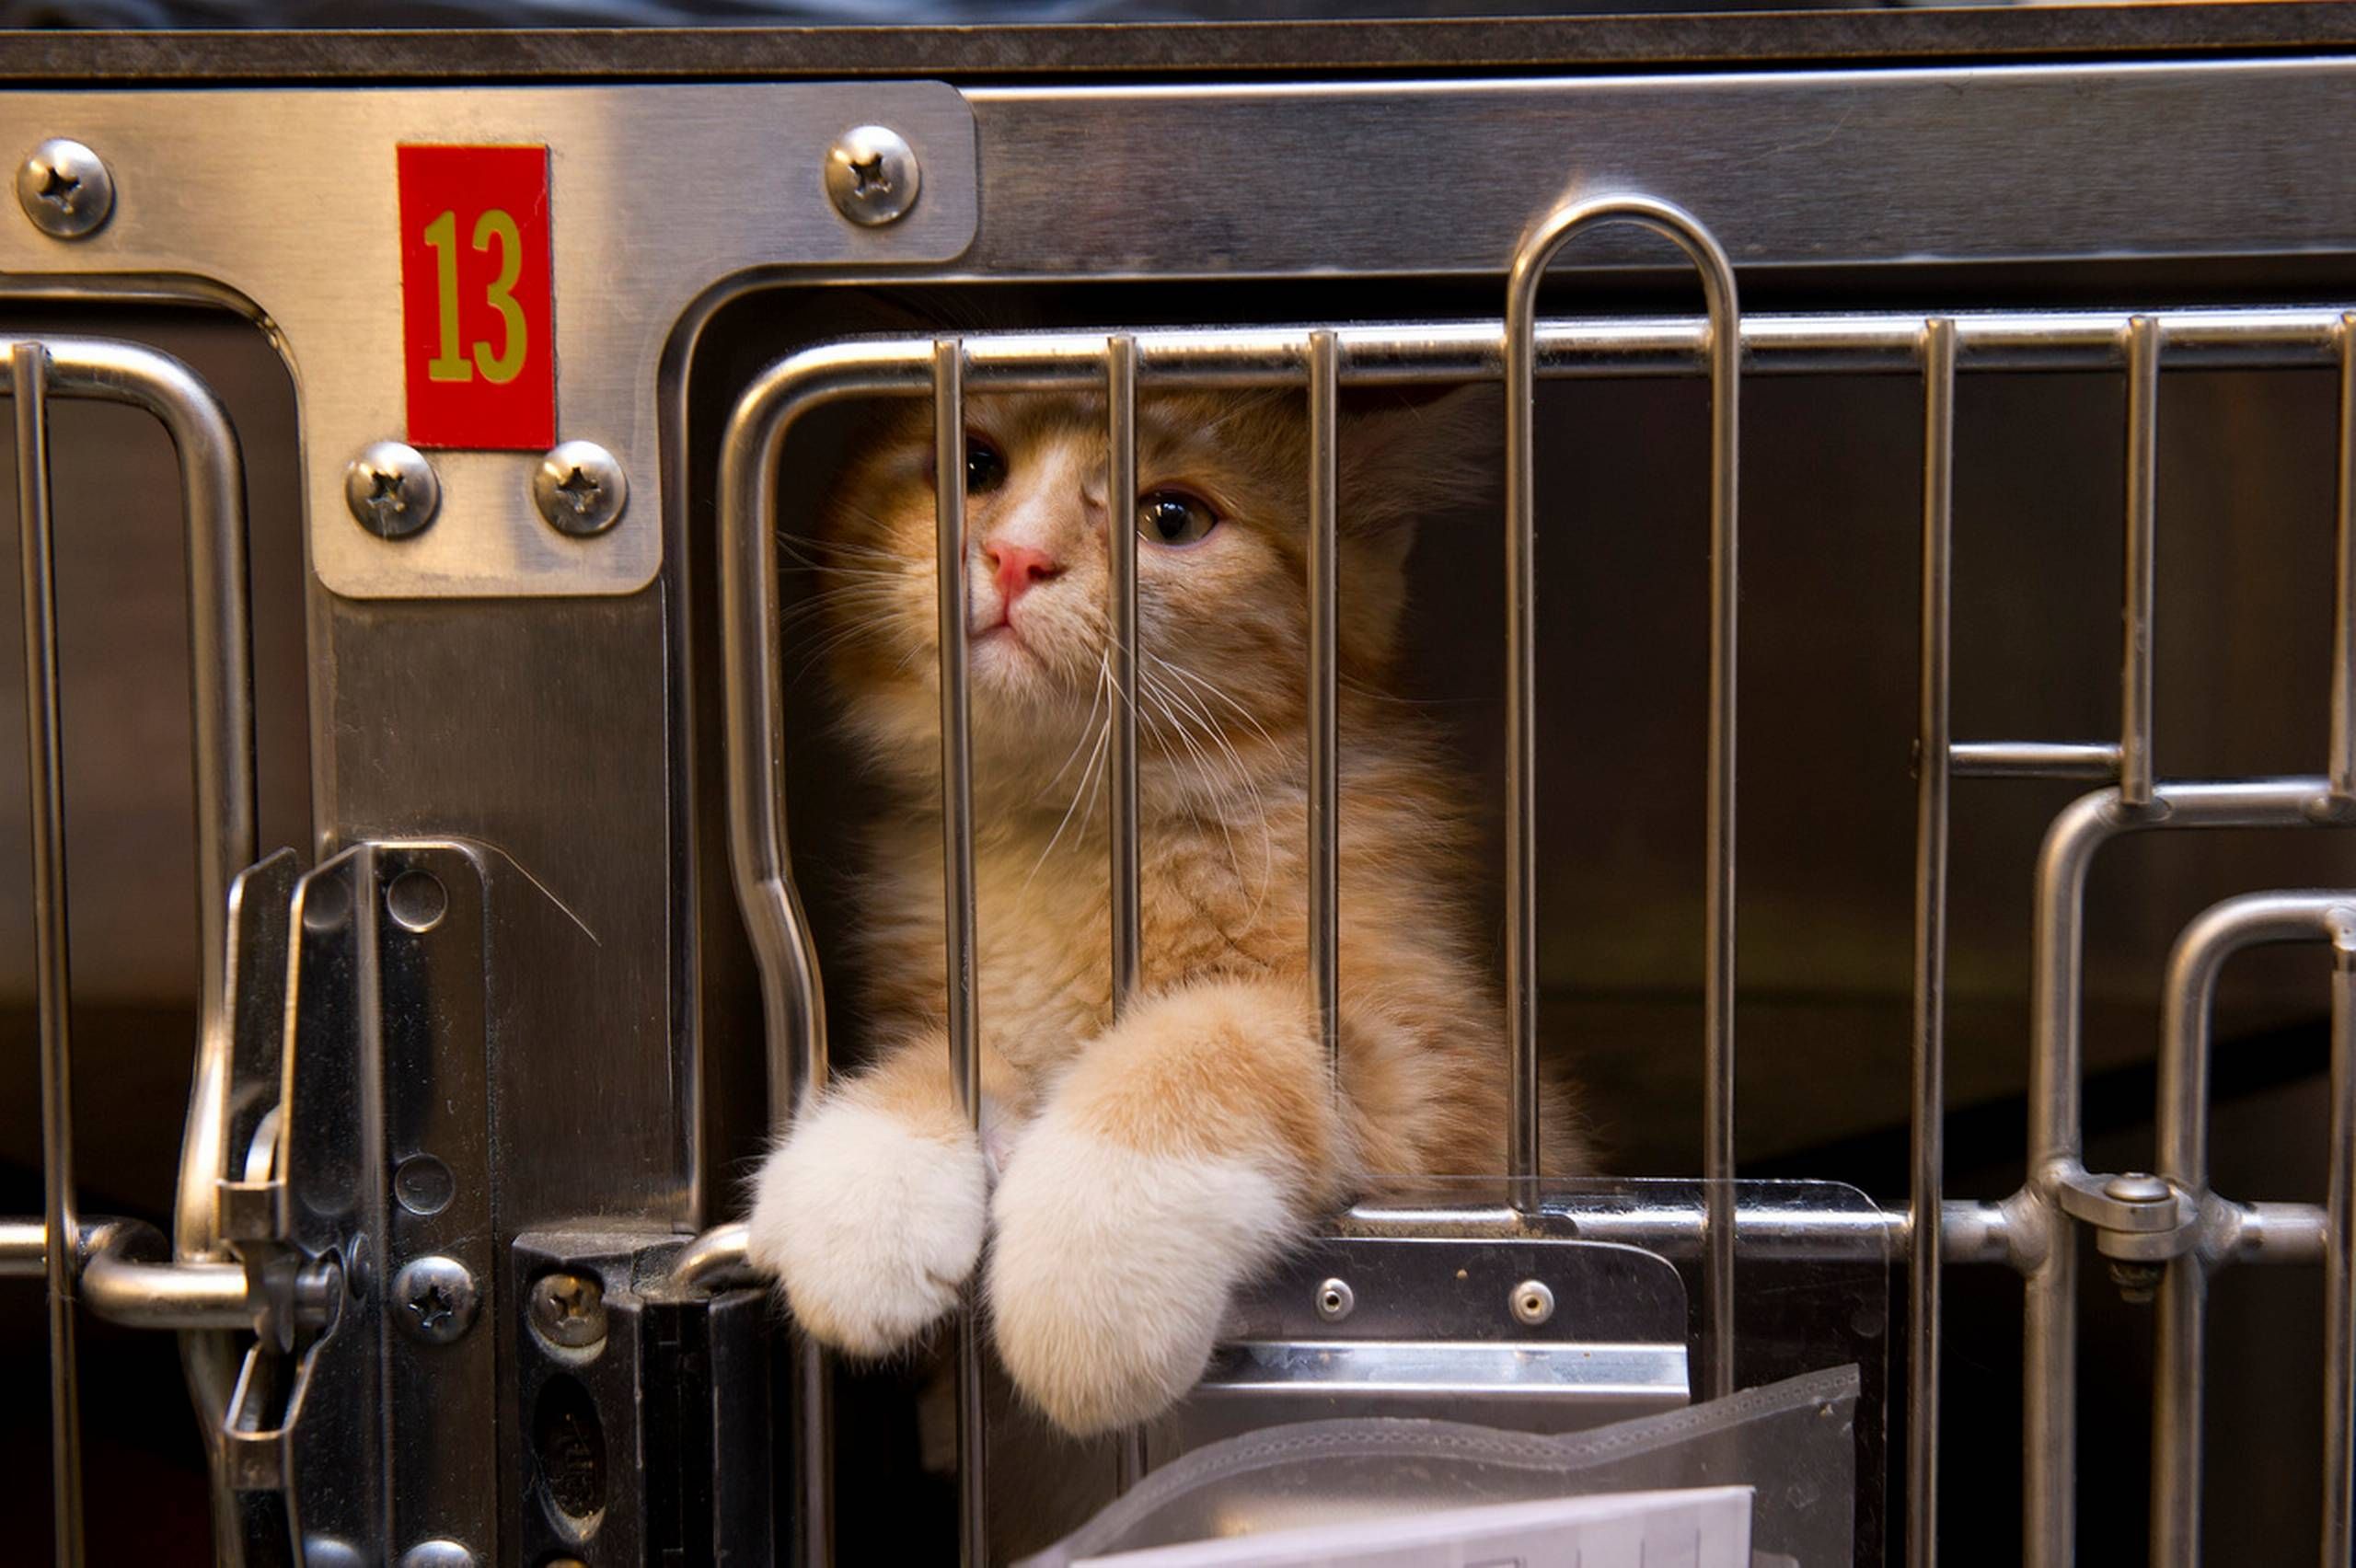 276 katte fanget i konkursbo: Mariann vil kæmpe at give dem et godt liv